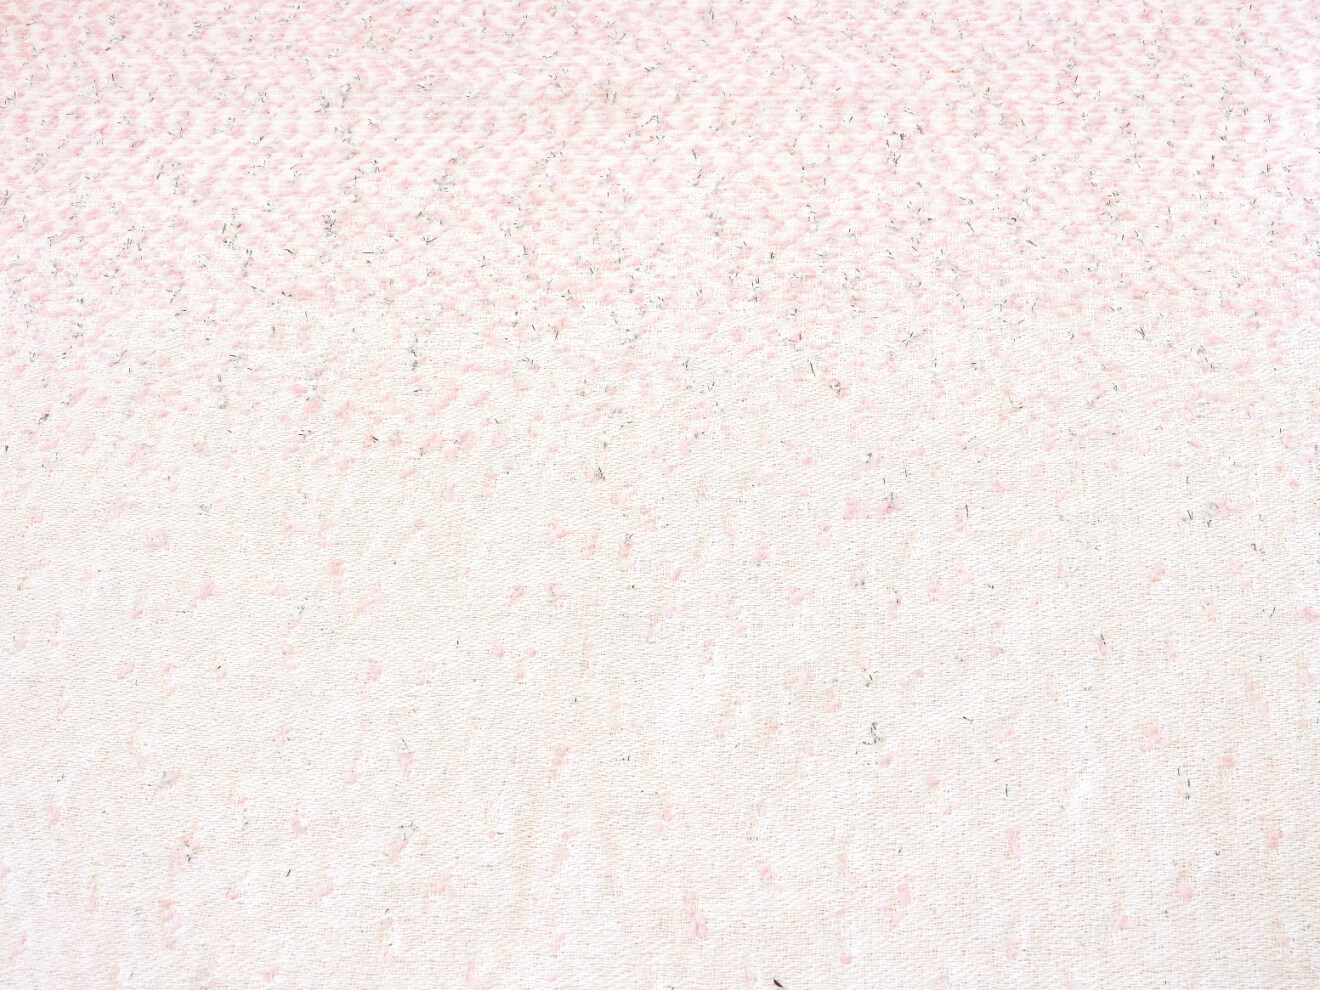 Твид Chanel, цвет Розовый, фото 1